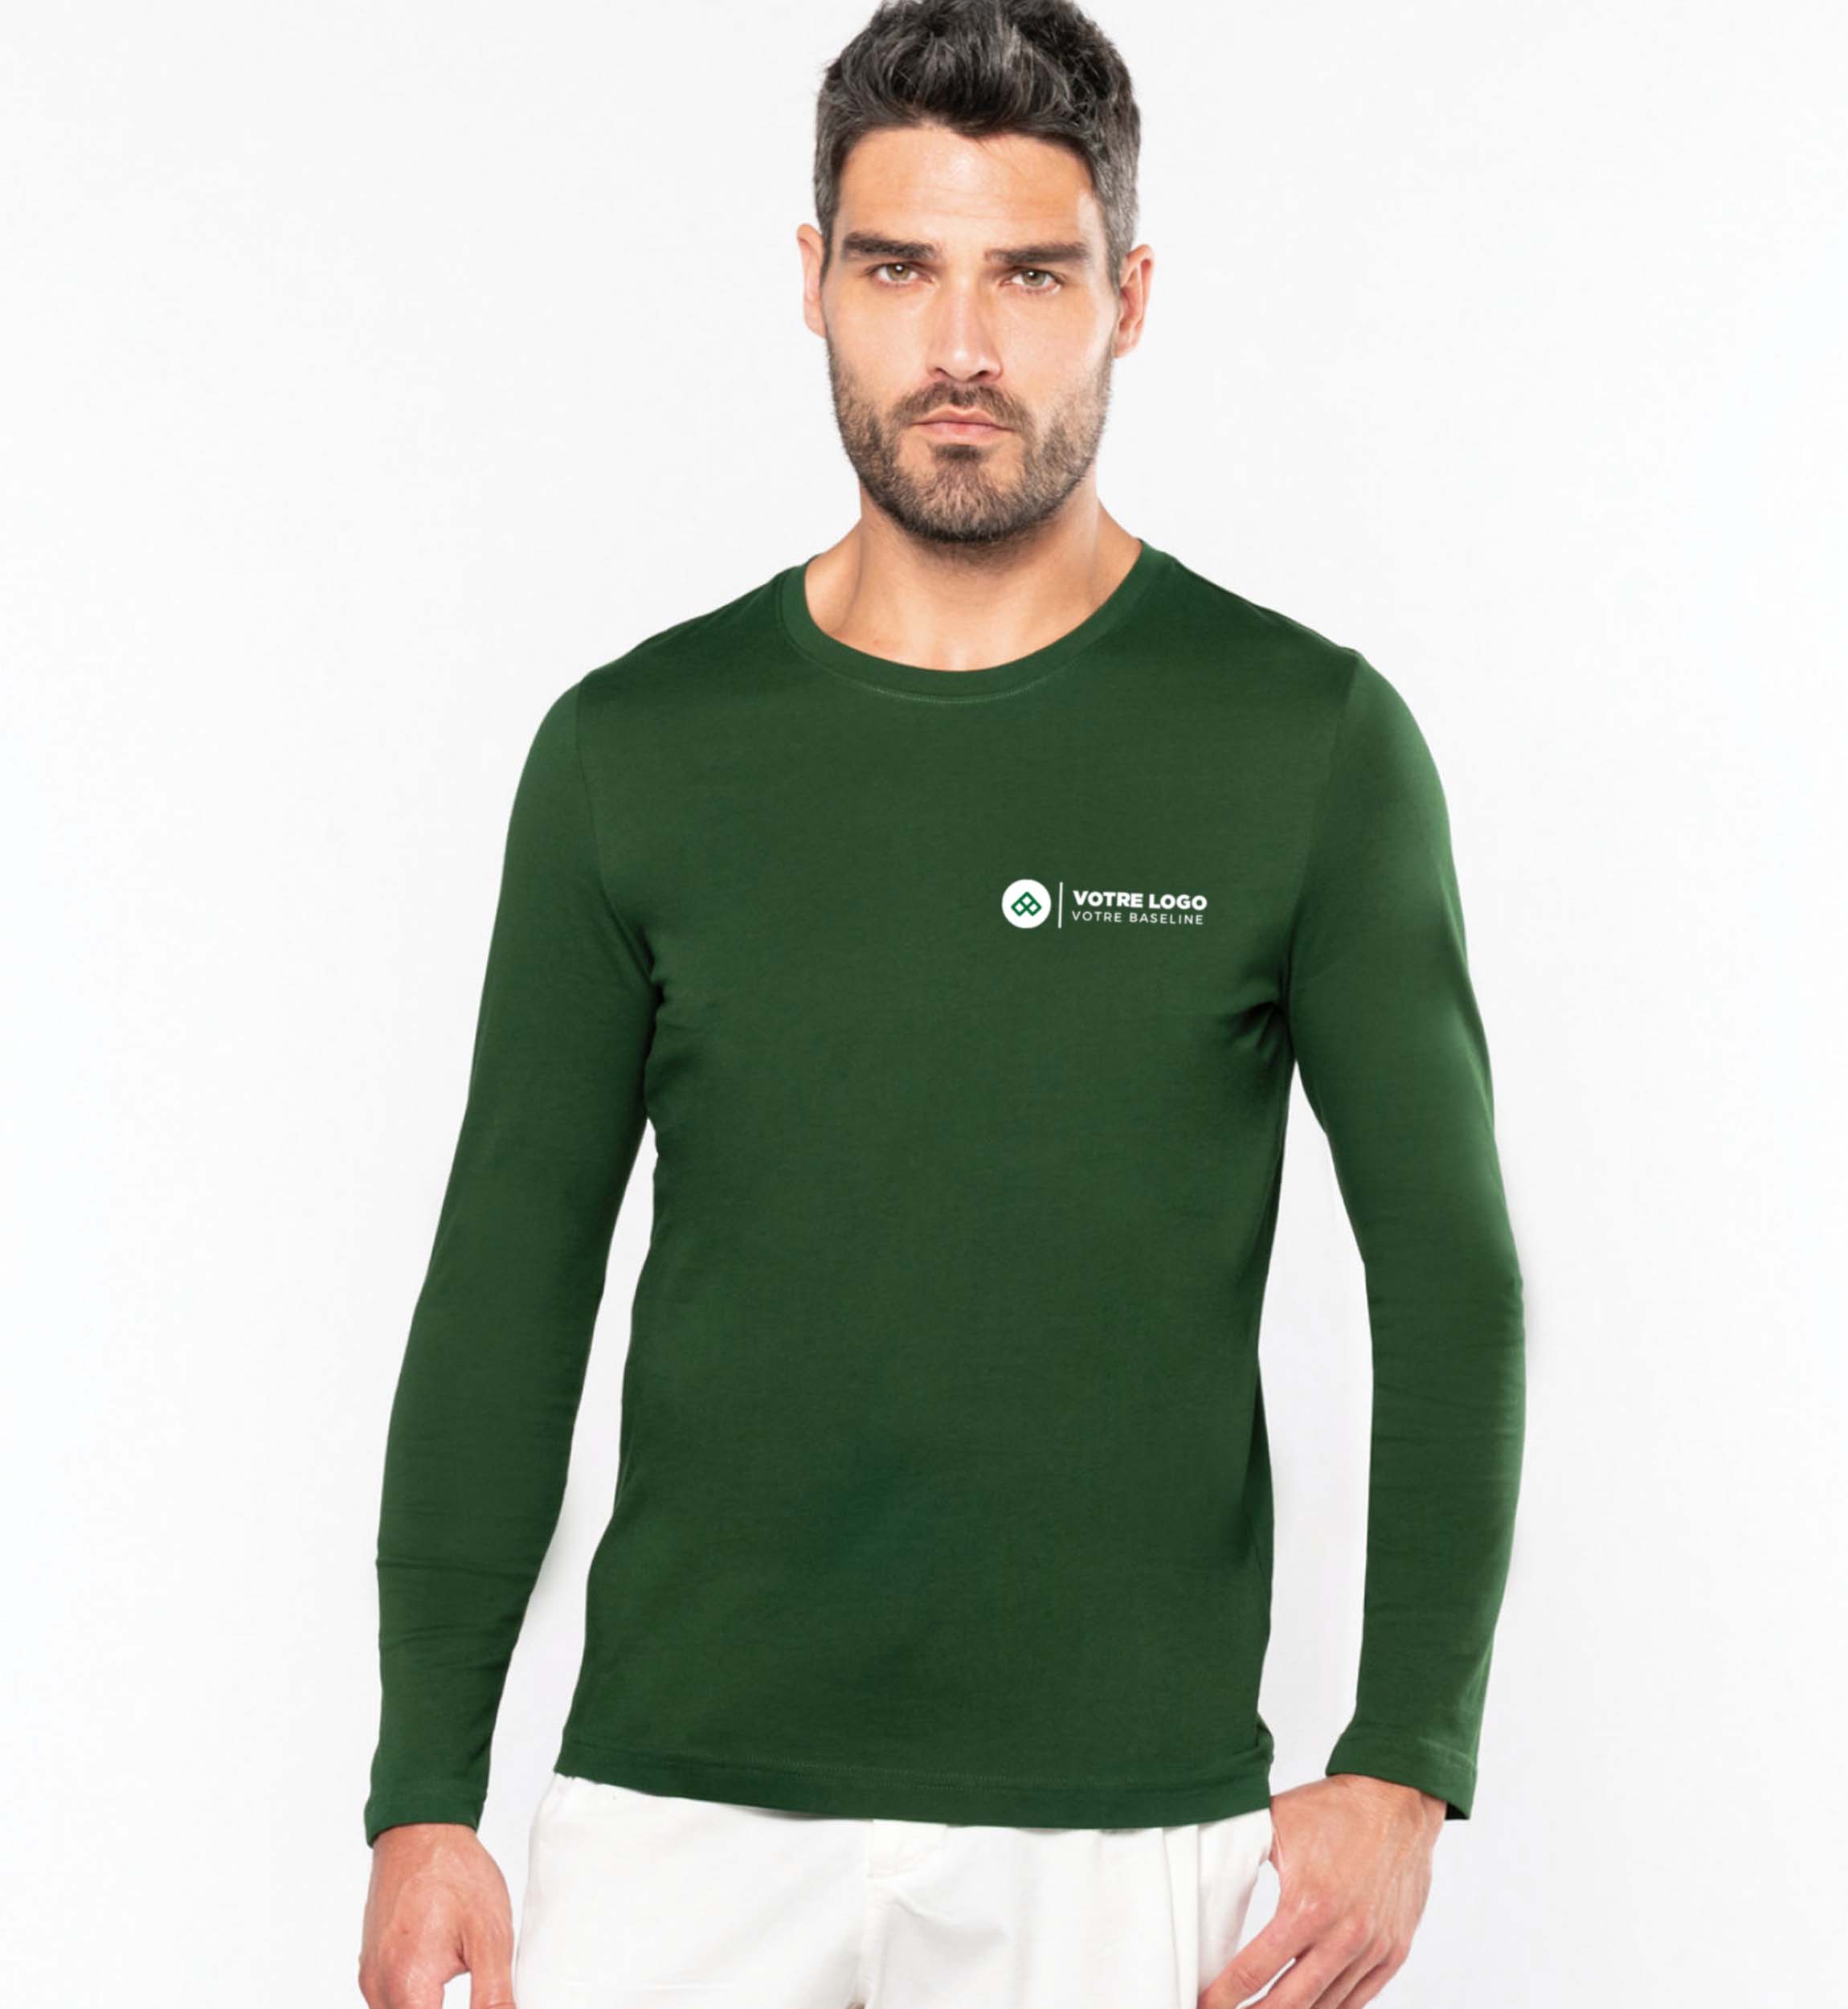 T-shirt Manches Longues Homme couleur vert forêt avec exemple de logo brodé sur le coeur